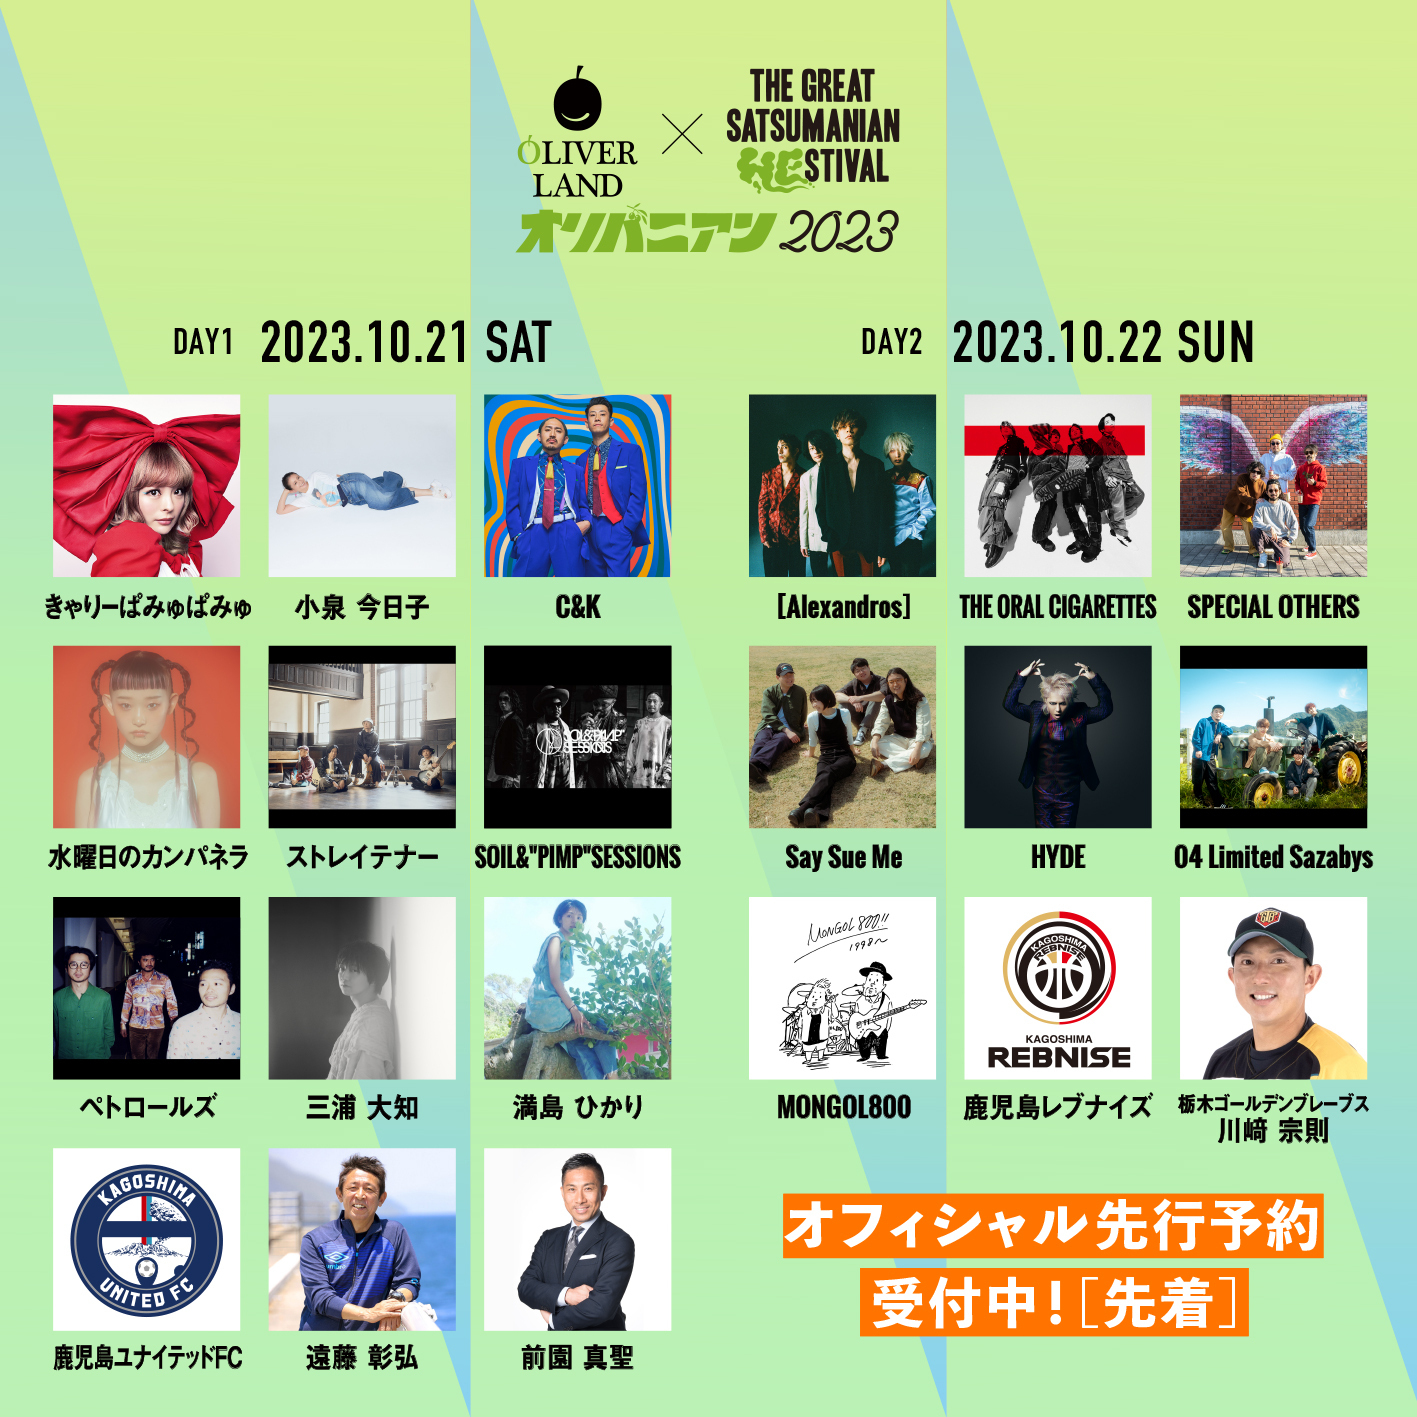 10/21(土) 鹿児島「THE GREAT SATSUMANIAN HESTIVAL 2023」にC&K出演 